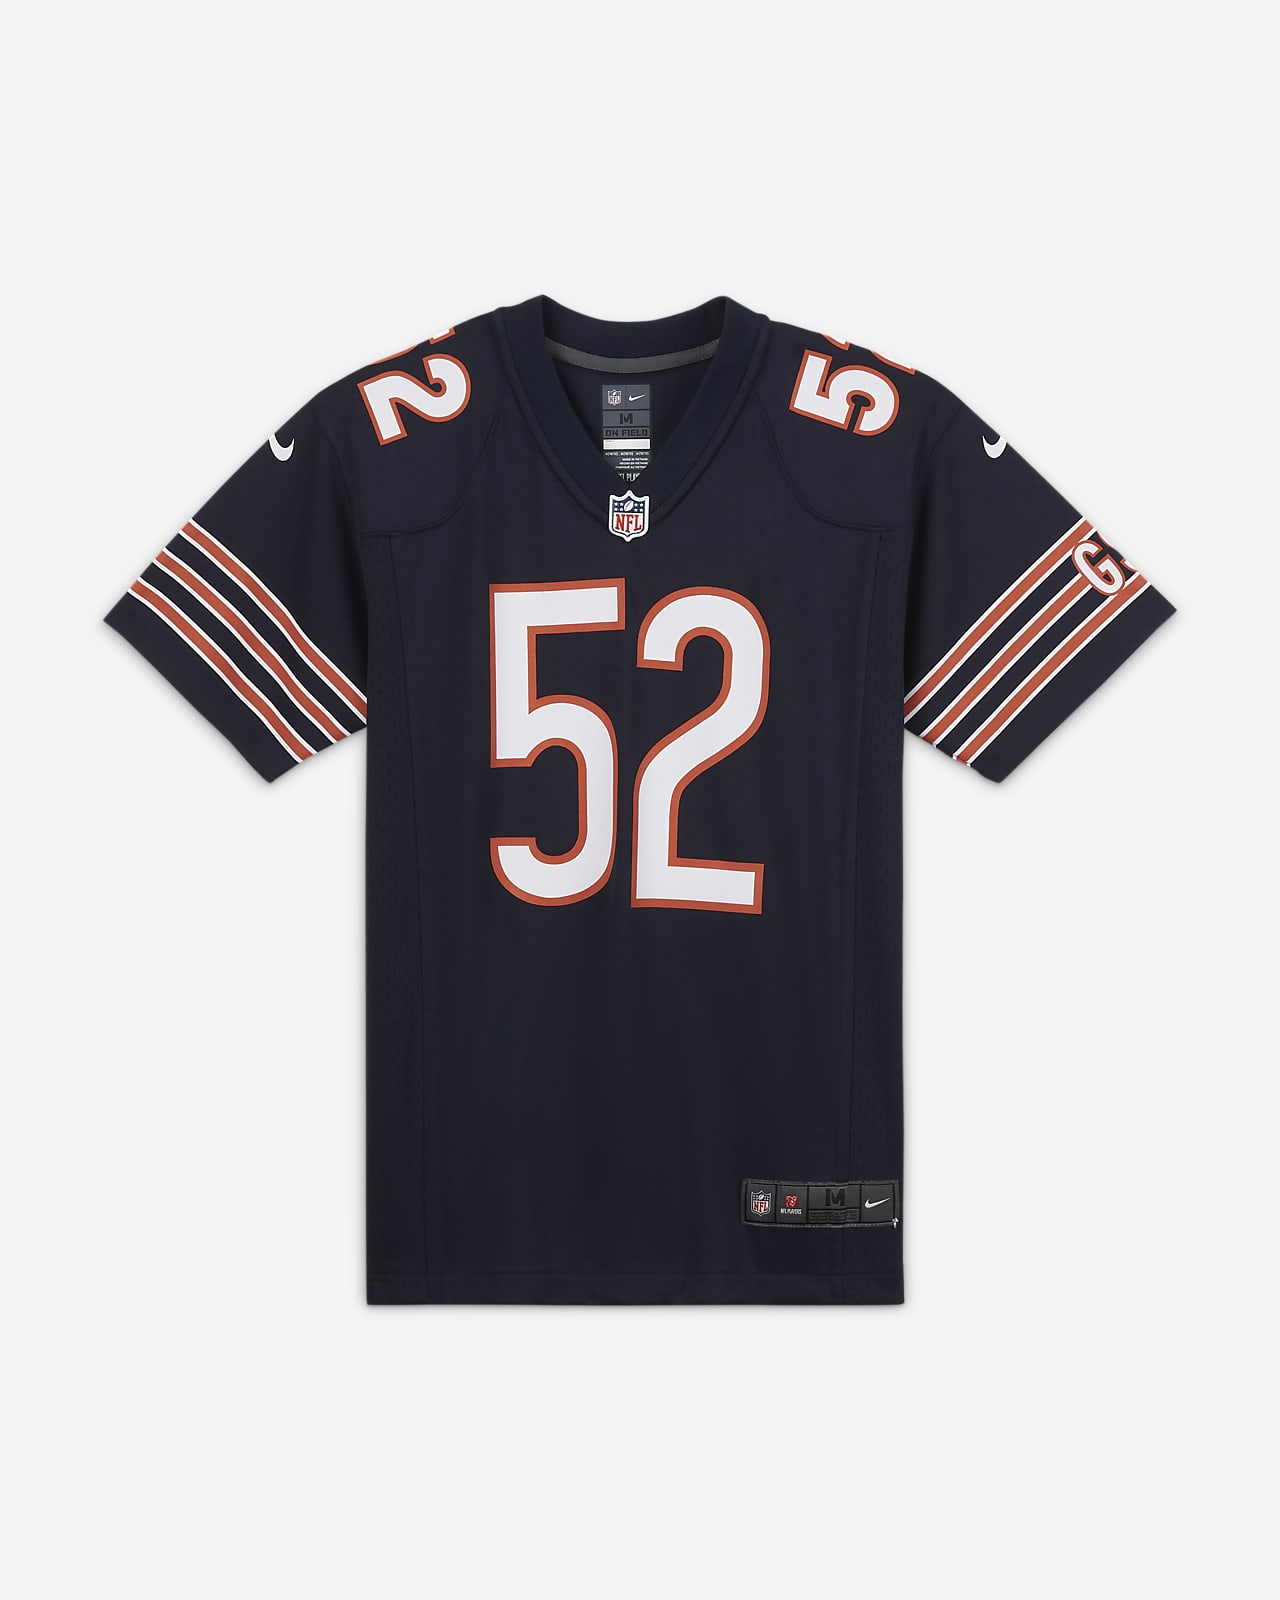 Koszulka do futbolu amerykańskiego dla dużych dzieci NFL Chicago Bears (Khalil Mack)